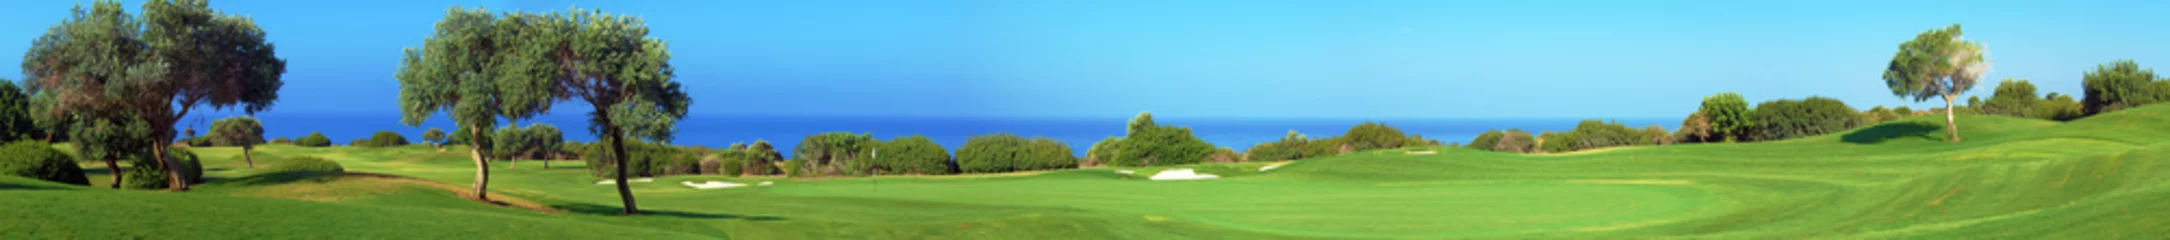 Photo sur Aluminium Golf Panorama du terrain de golf, de la mer et des oliviers